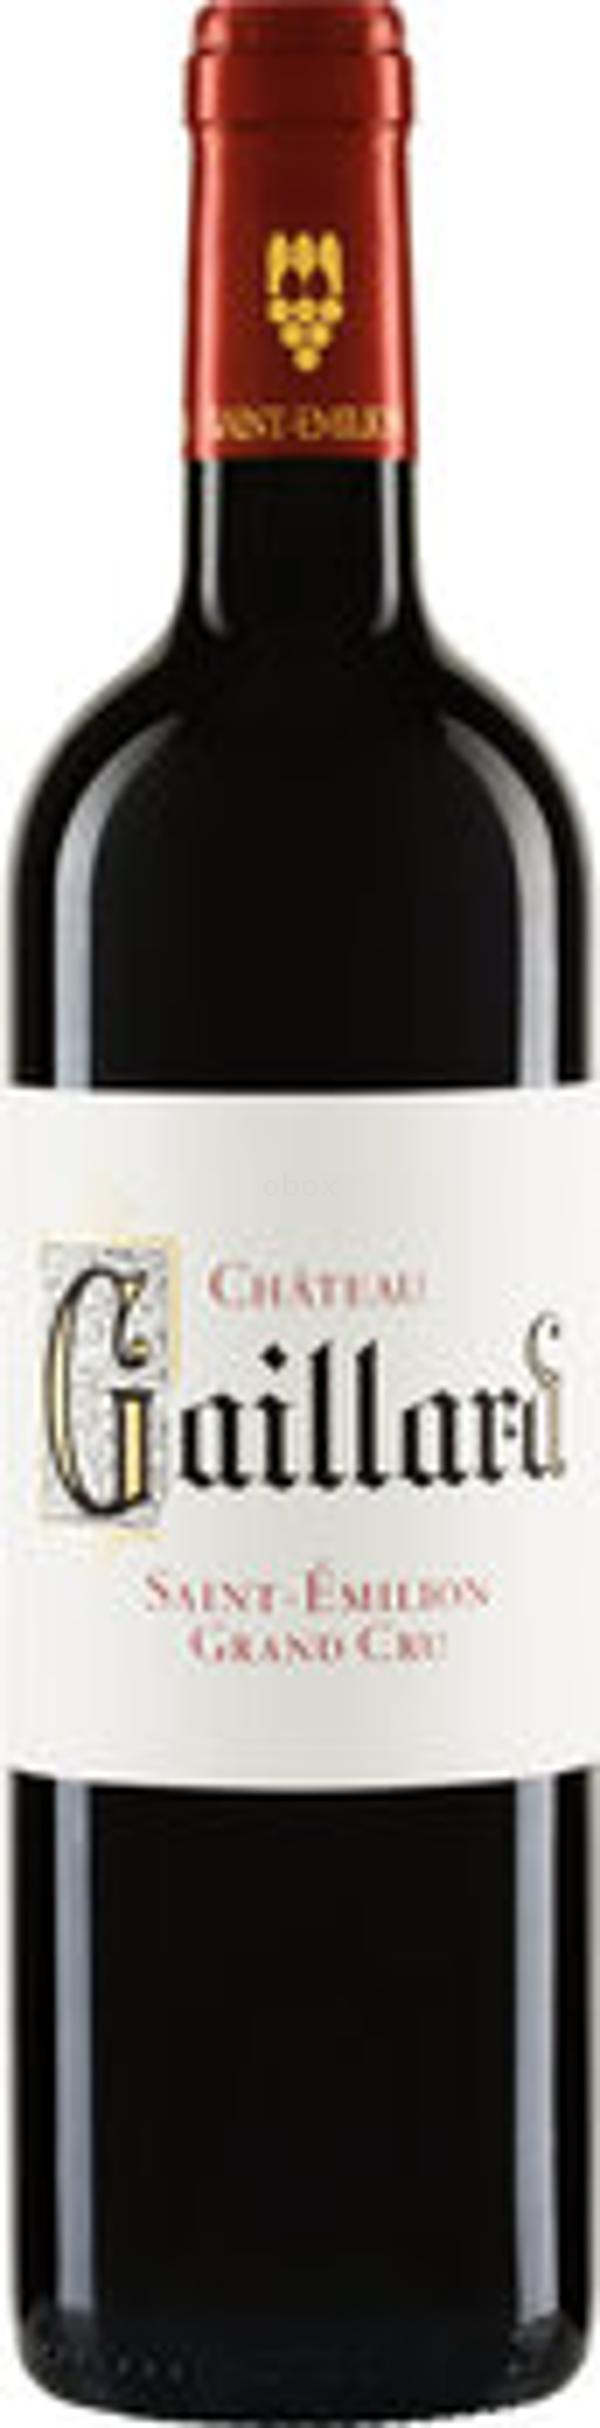 Produktfoto zu Château Gaillard St.-Émilion Grand Cru AOC